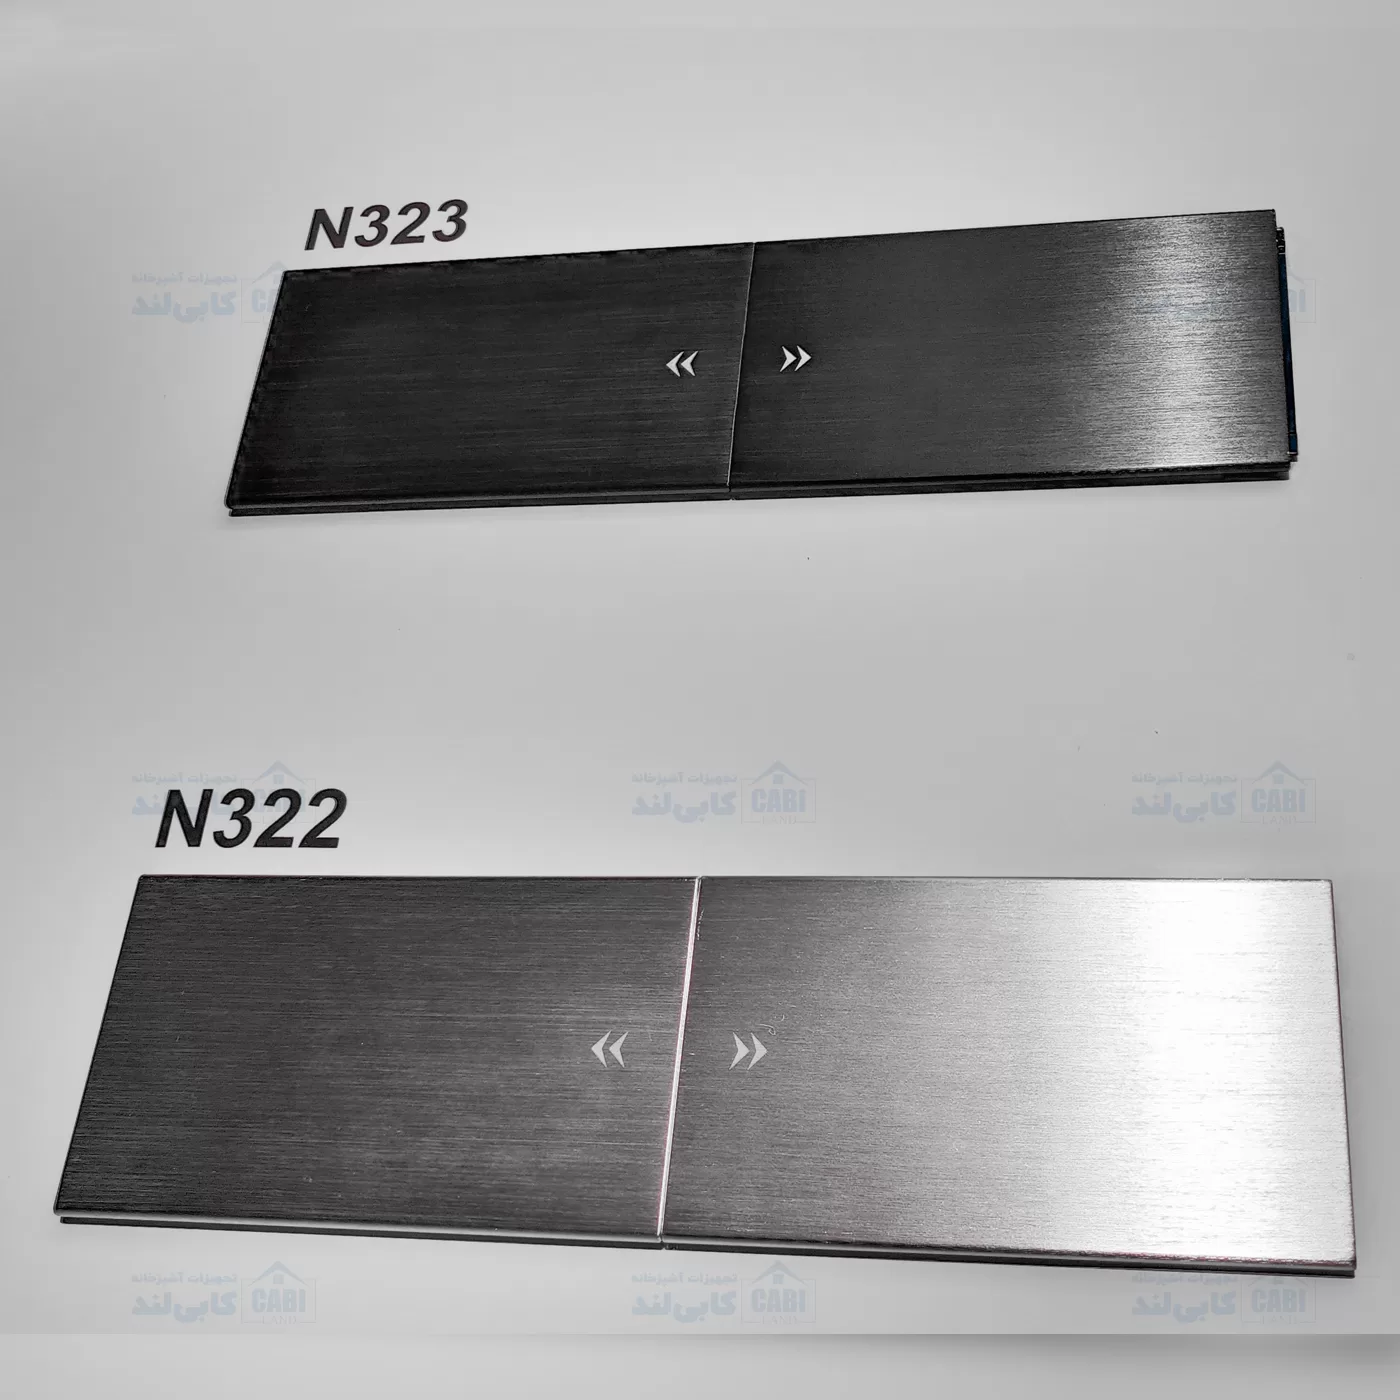 پریز برق توکار کشویی دوطرفه فانتونی مدل N322 و N323